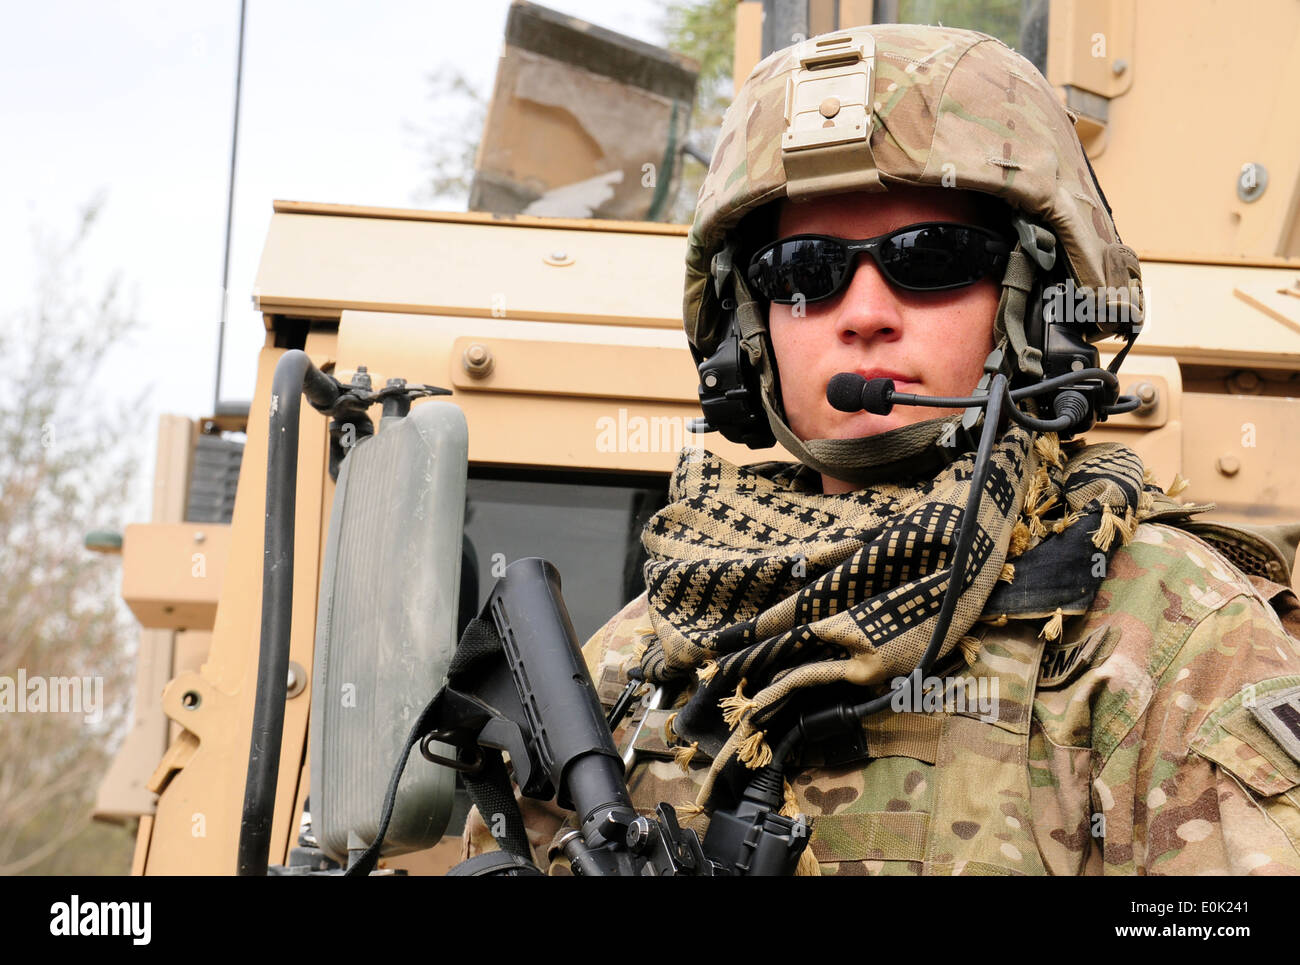 Task Force Spartan 3 Soldat Armee Spc. Rhesa Schubbe bietet Sicherheit für ihr Team während der afghanische Polizei Offiziere Combattimento Stockfoto